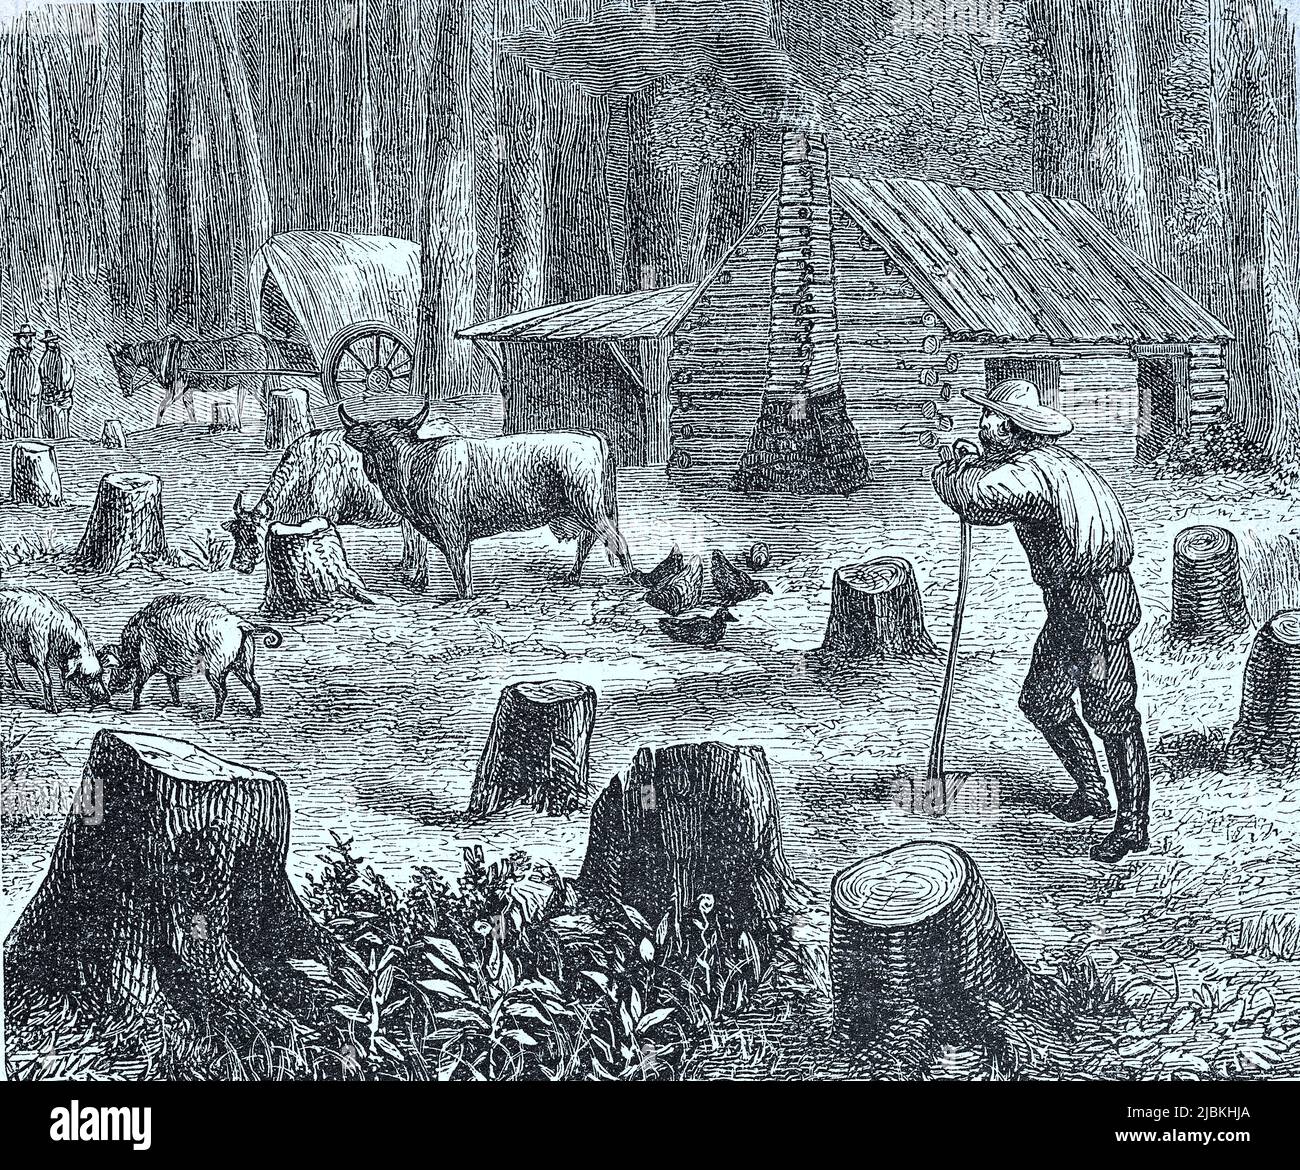 Waldrodung für eine neue Siedlung in Kalifornien im Jahre 1880, Amerika, digital restaurierte Reproduktion einer Originalvorlage aus dem 19. Jahrhundert, genaues Originaldatum nicht bekannt Stock Photo